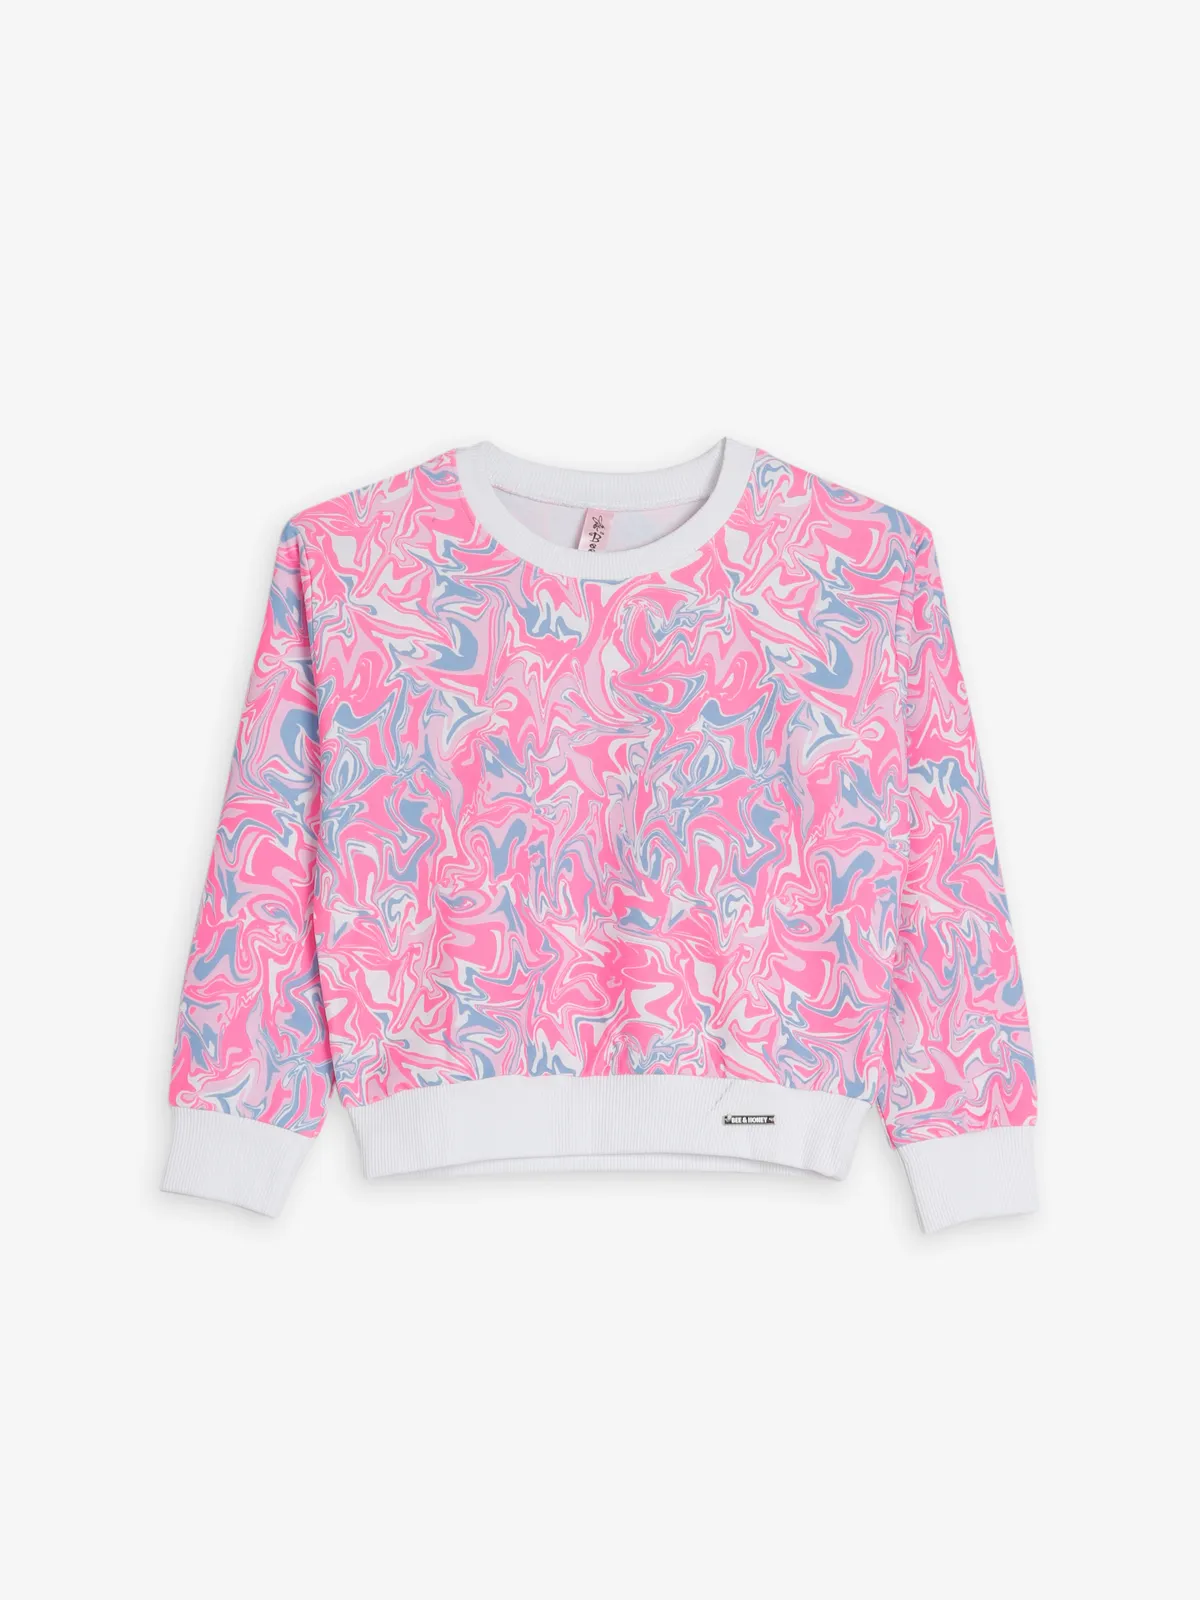 Bee&Honey cotton baby pink sweatshirt